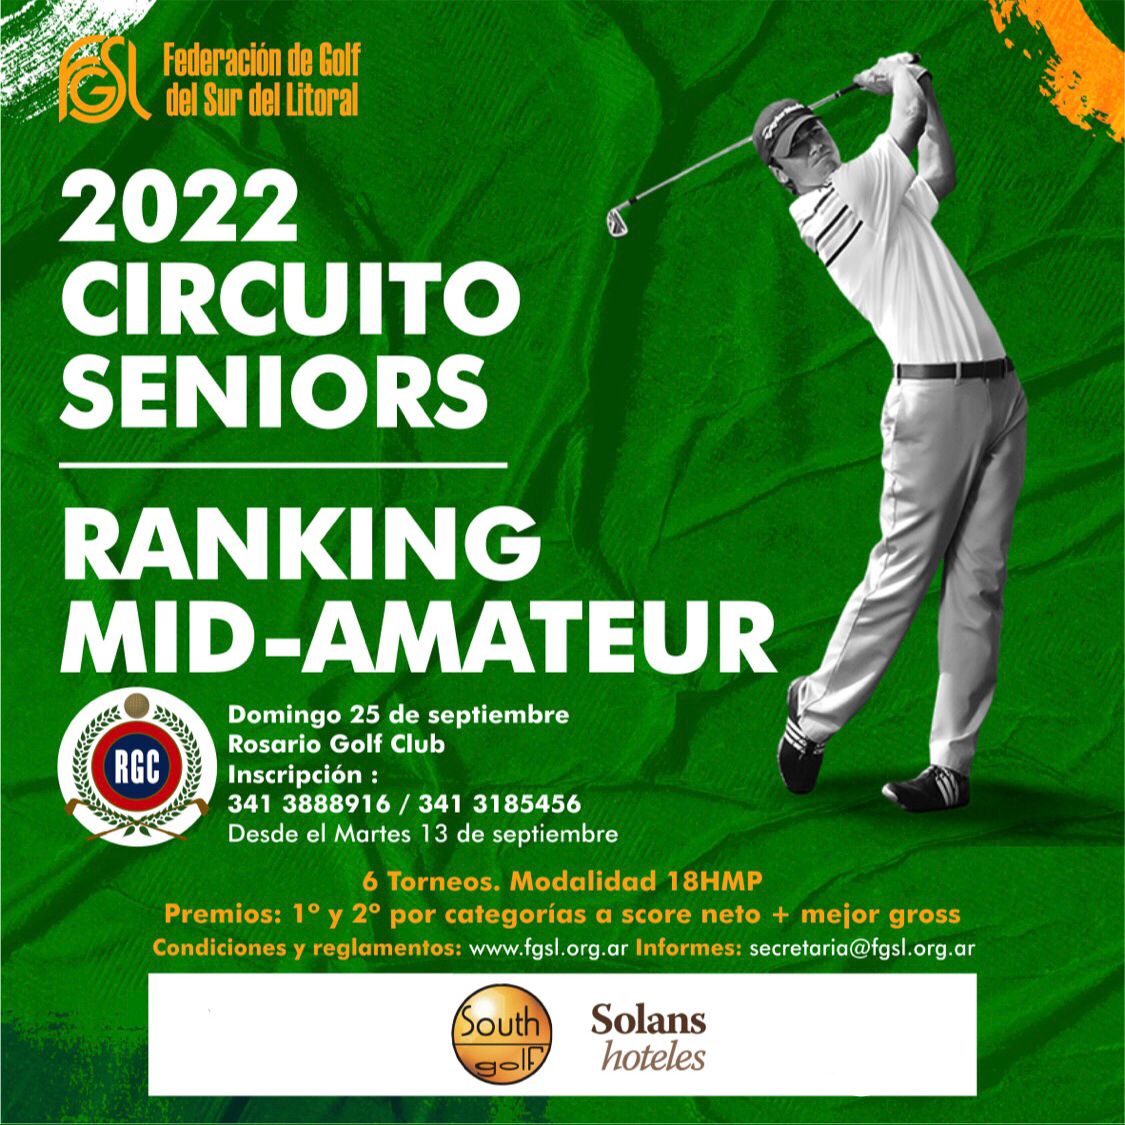 No se para: los Mid Amateur y los Seniors van al Rosario Golf el domingo 25 de septiembre